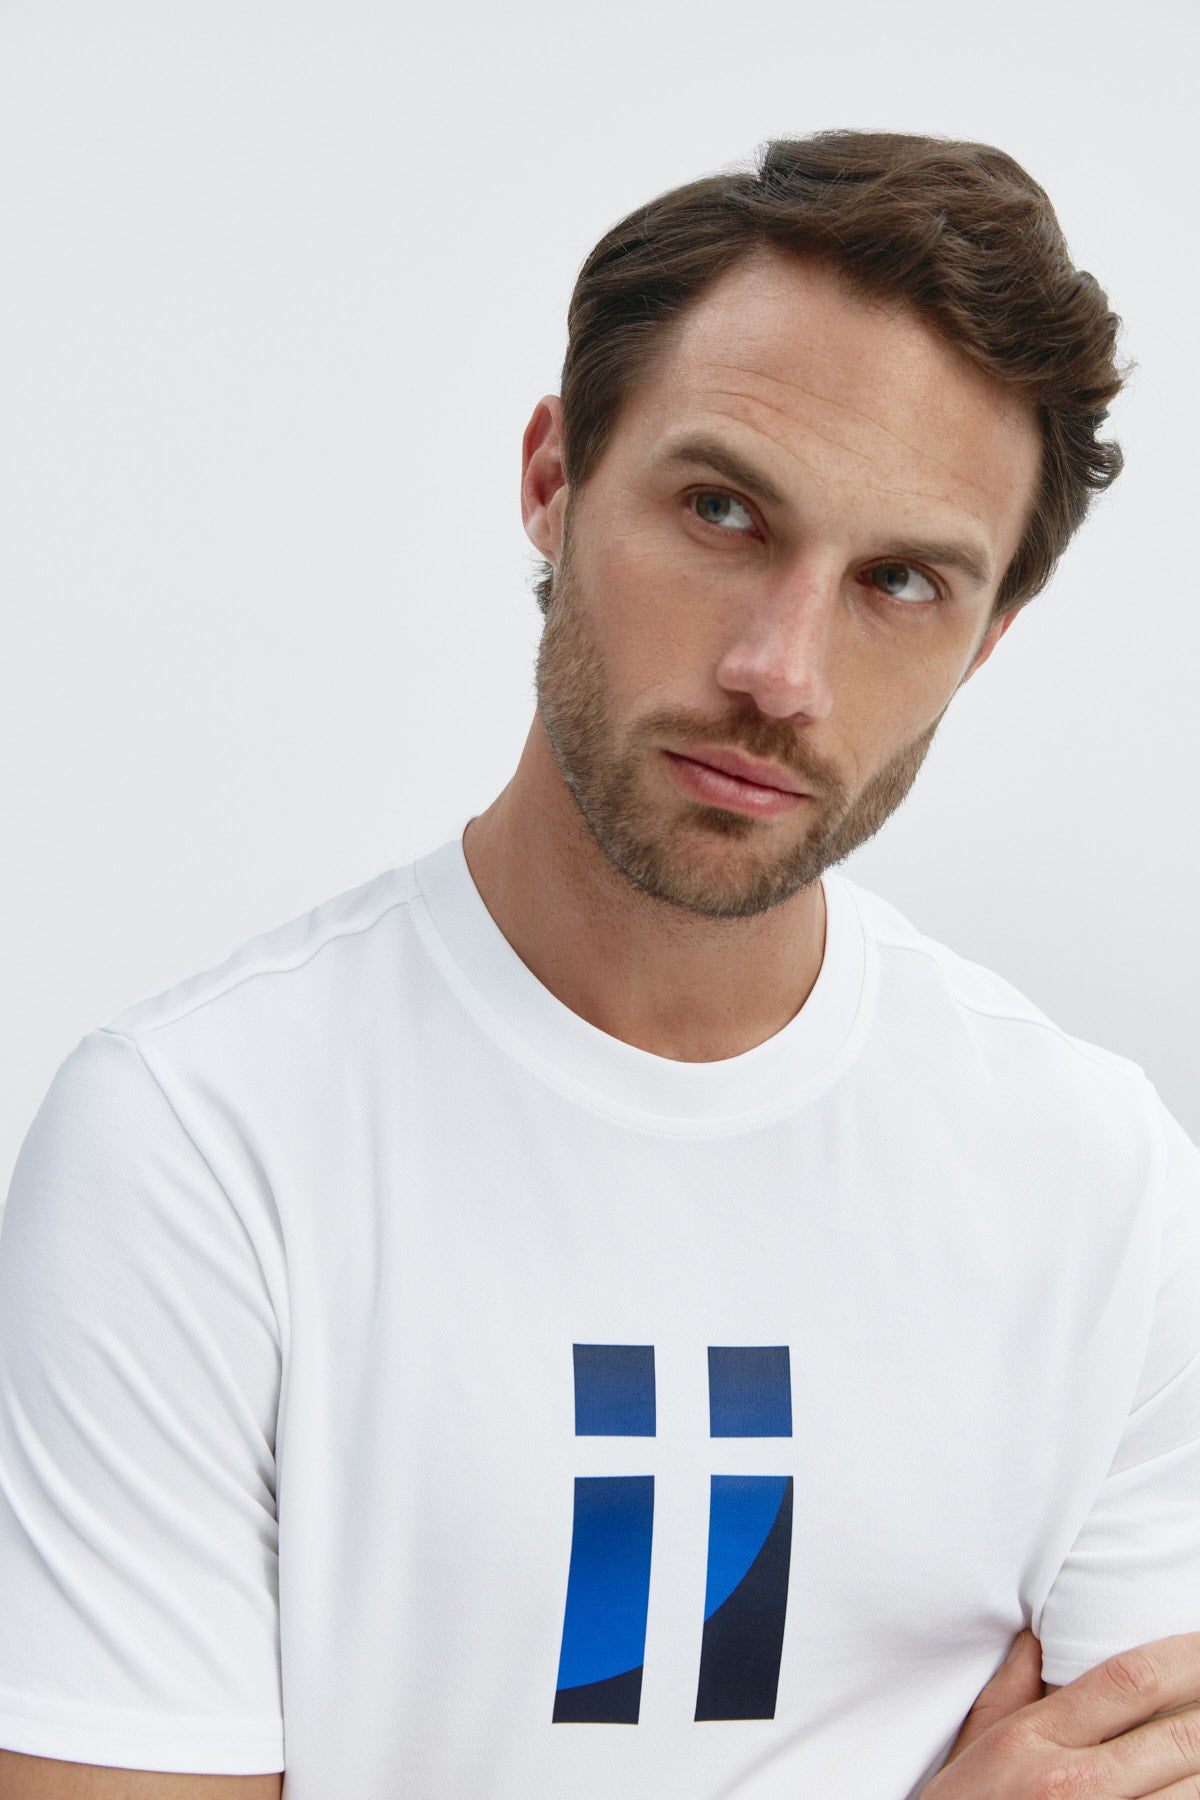 Camiseta básica de hombre blanca con logo estampado de aleta de manga corta, antiarrugas y antimanchas. Foto retrato